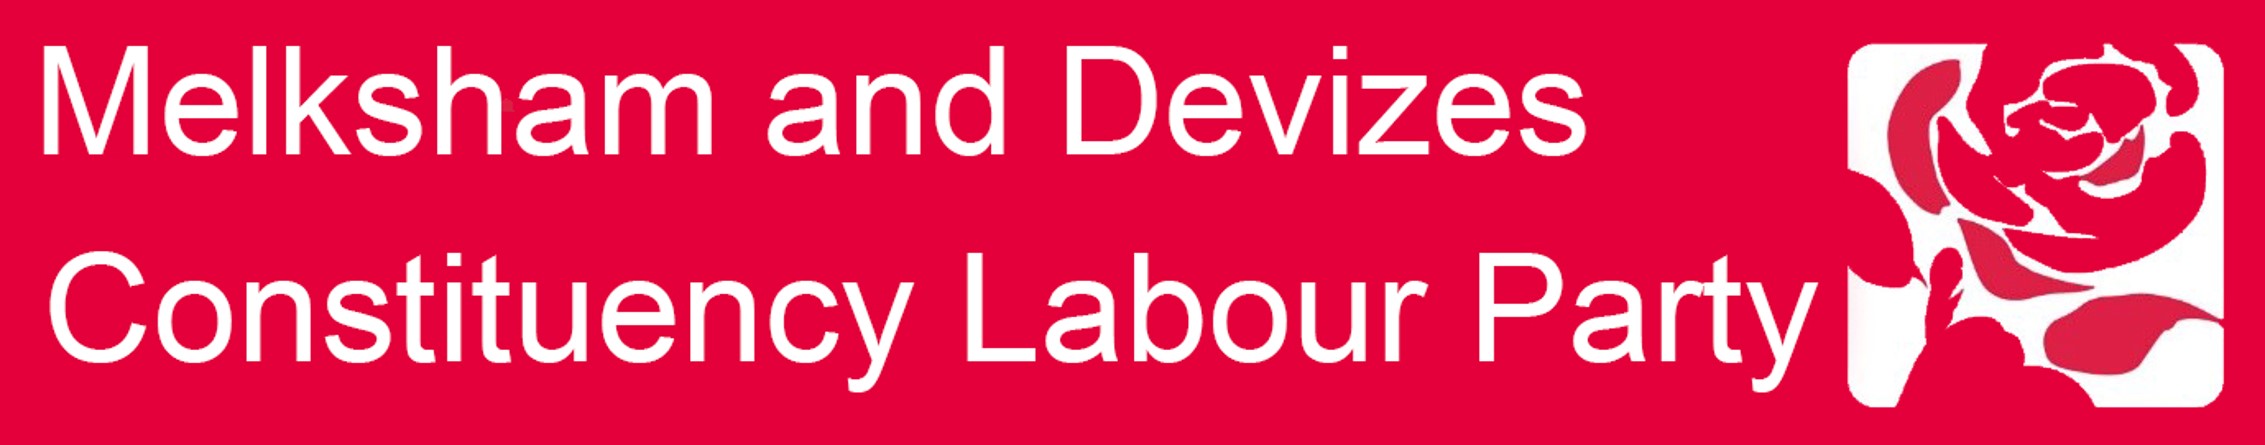 Melksham and Devizes Constituency Labour Party